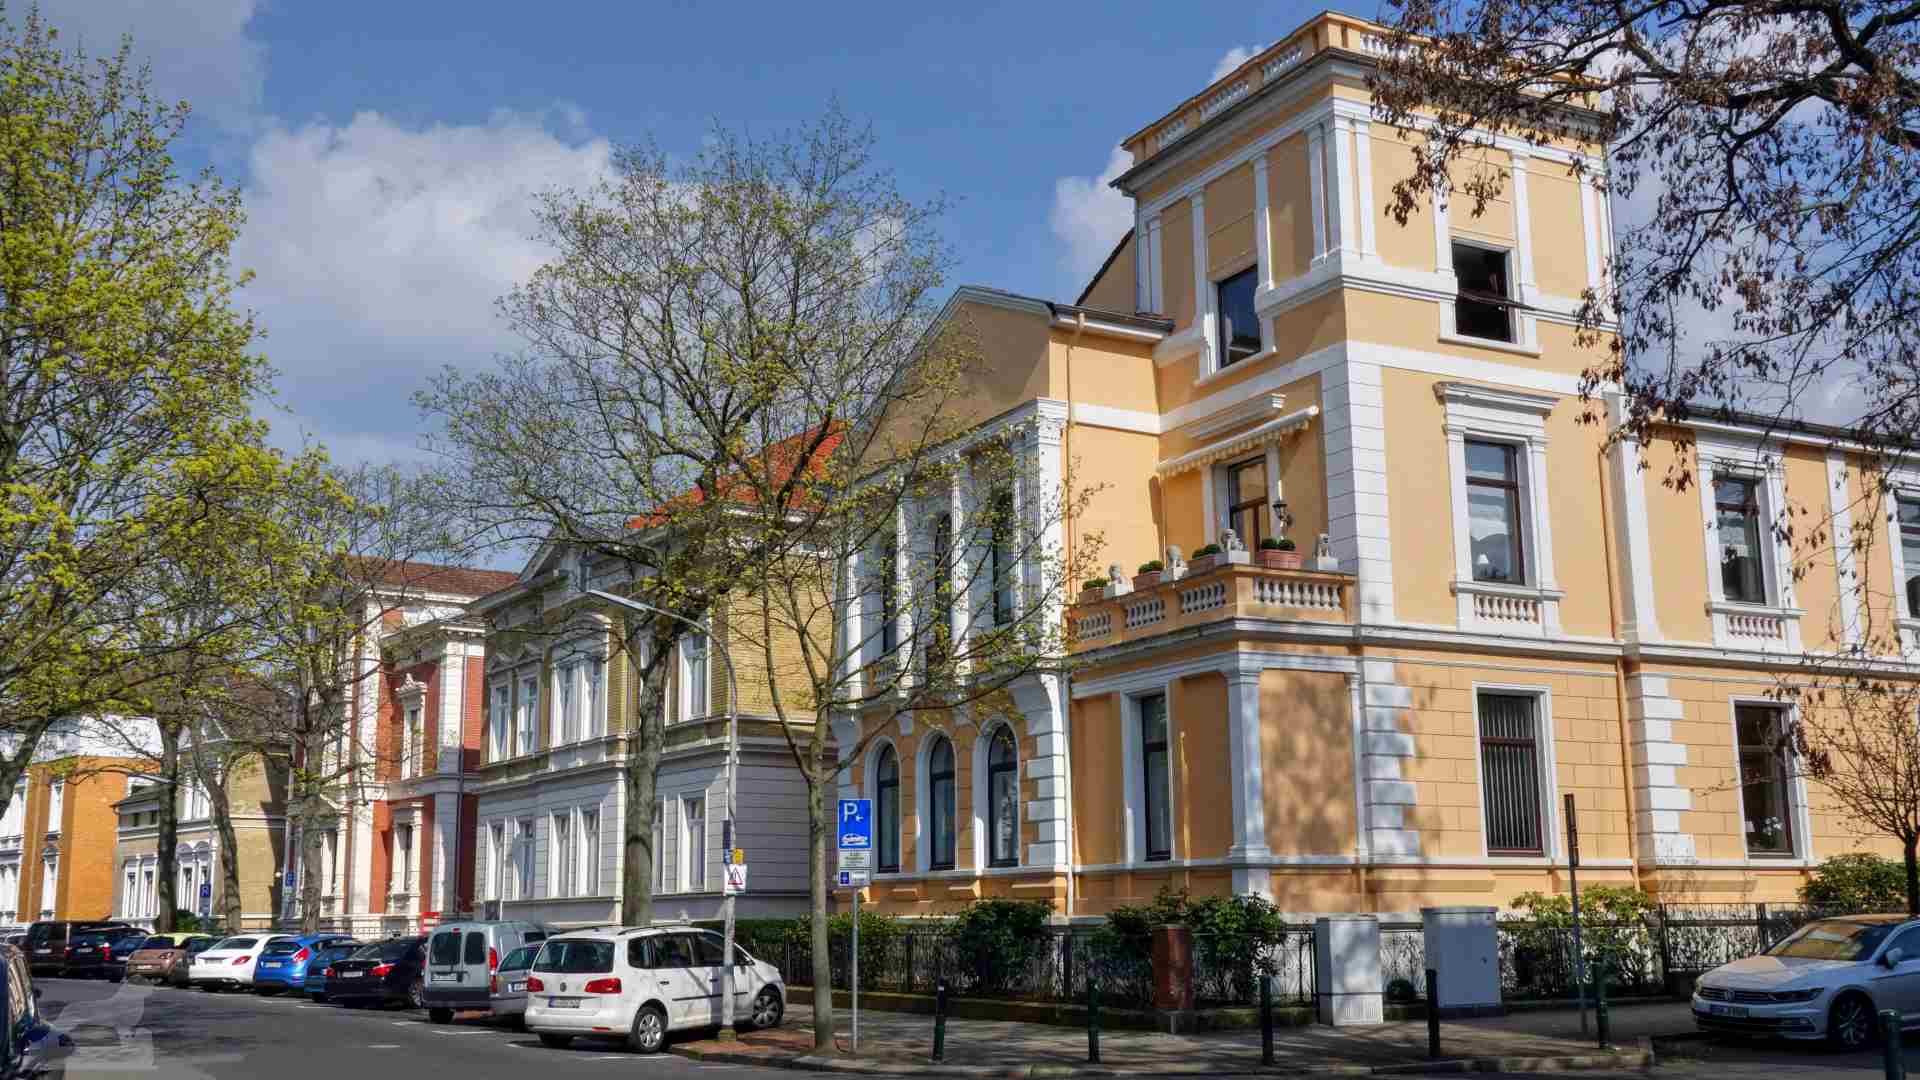 Adolfstraße